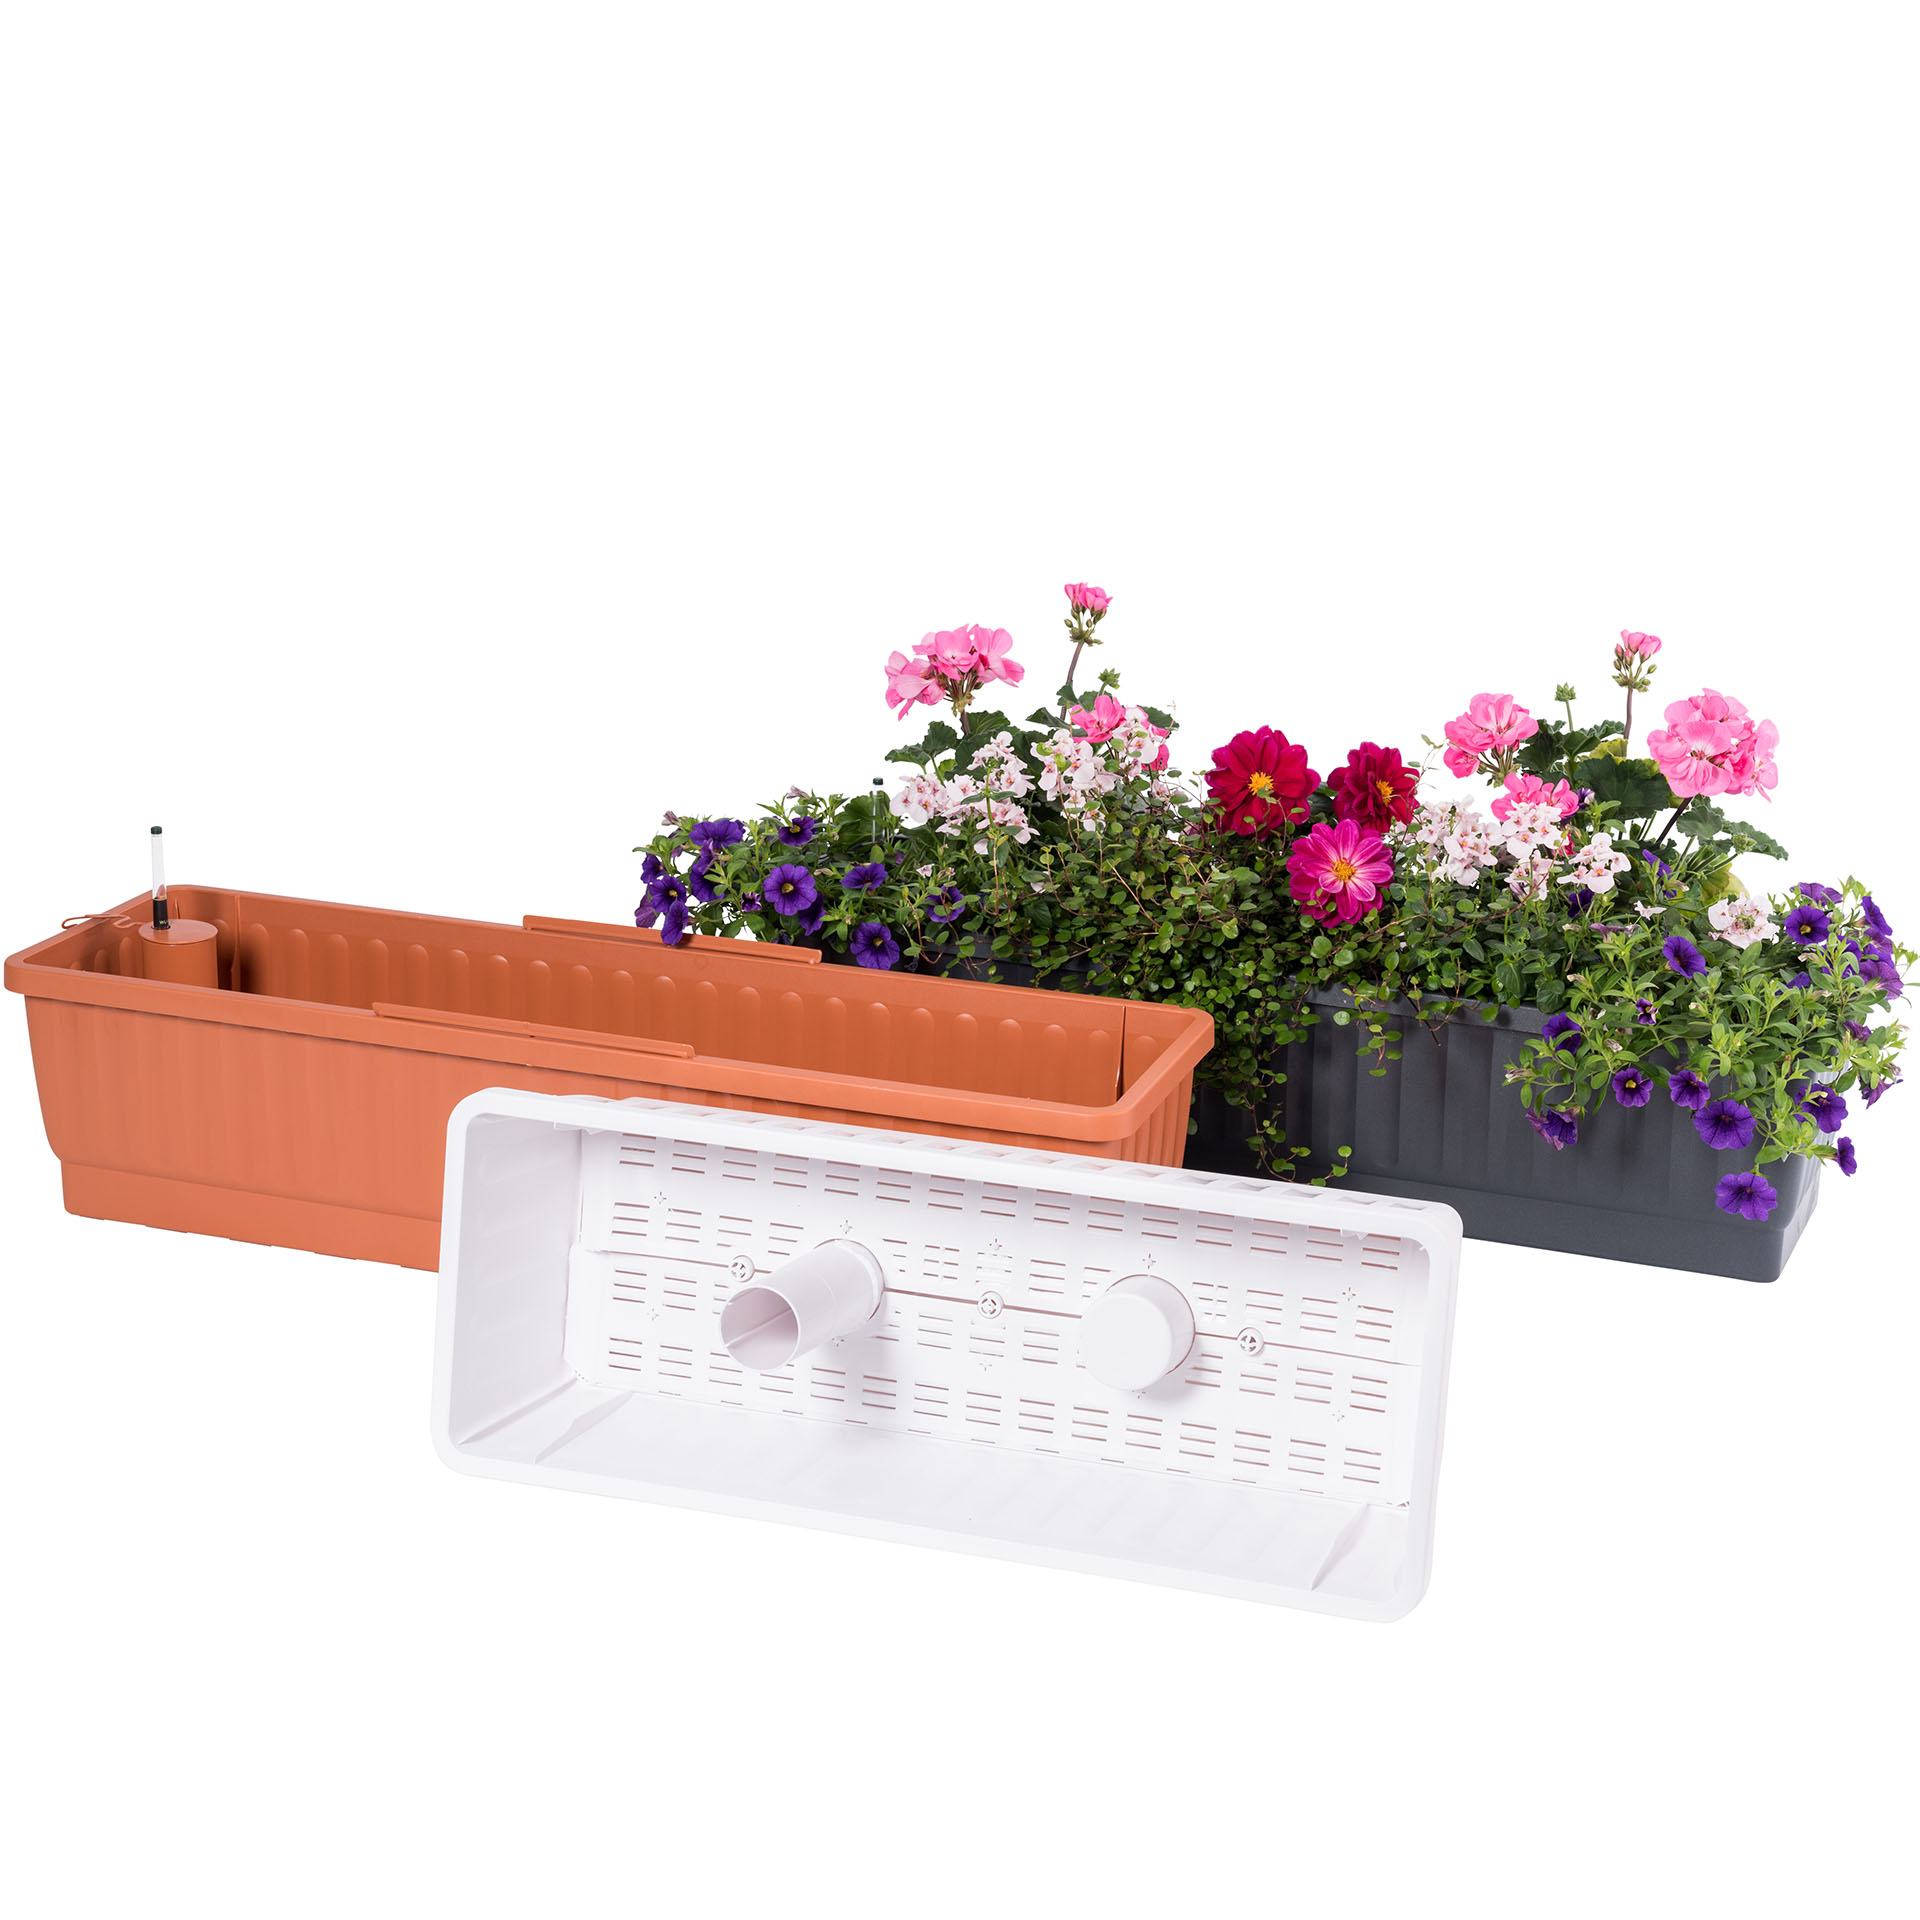 Details about   Blumenkasten mit Wasserspeicher Blumentopf Balkonkasten Bewässerung terracotta 